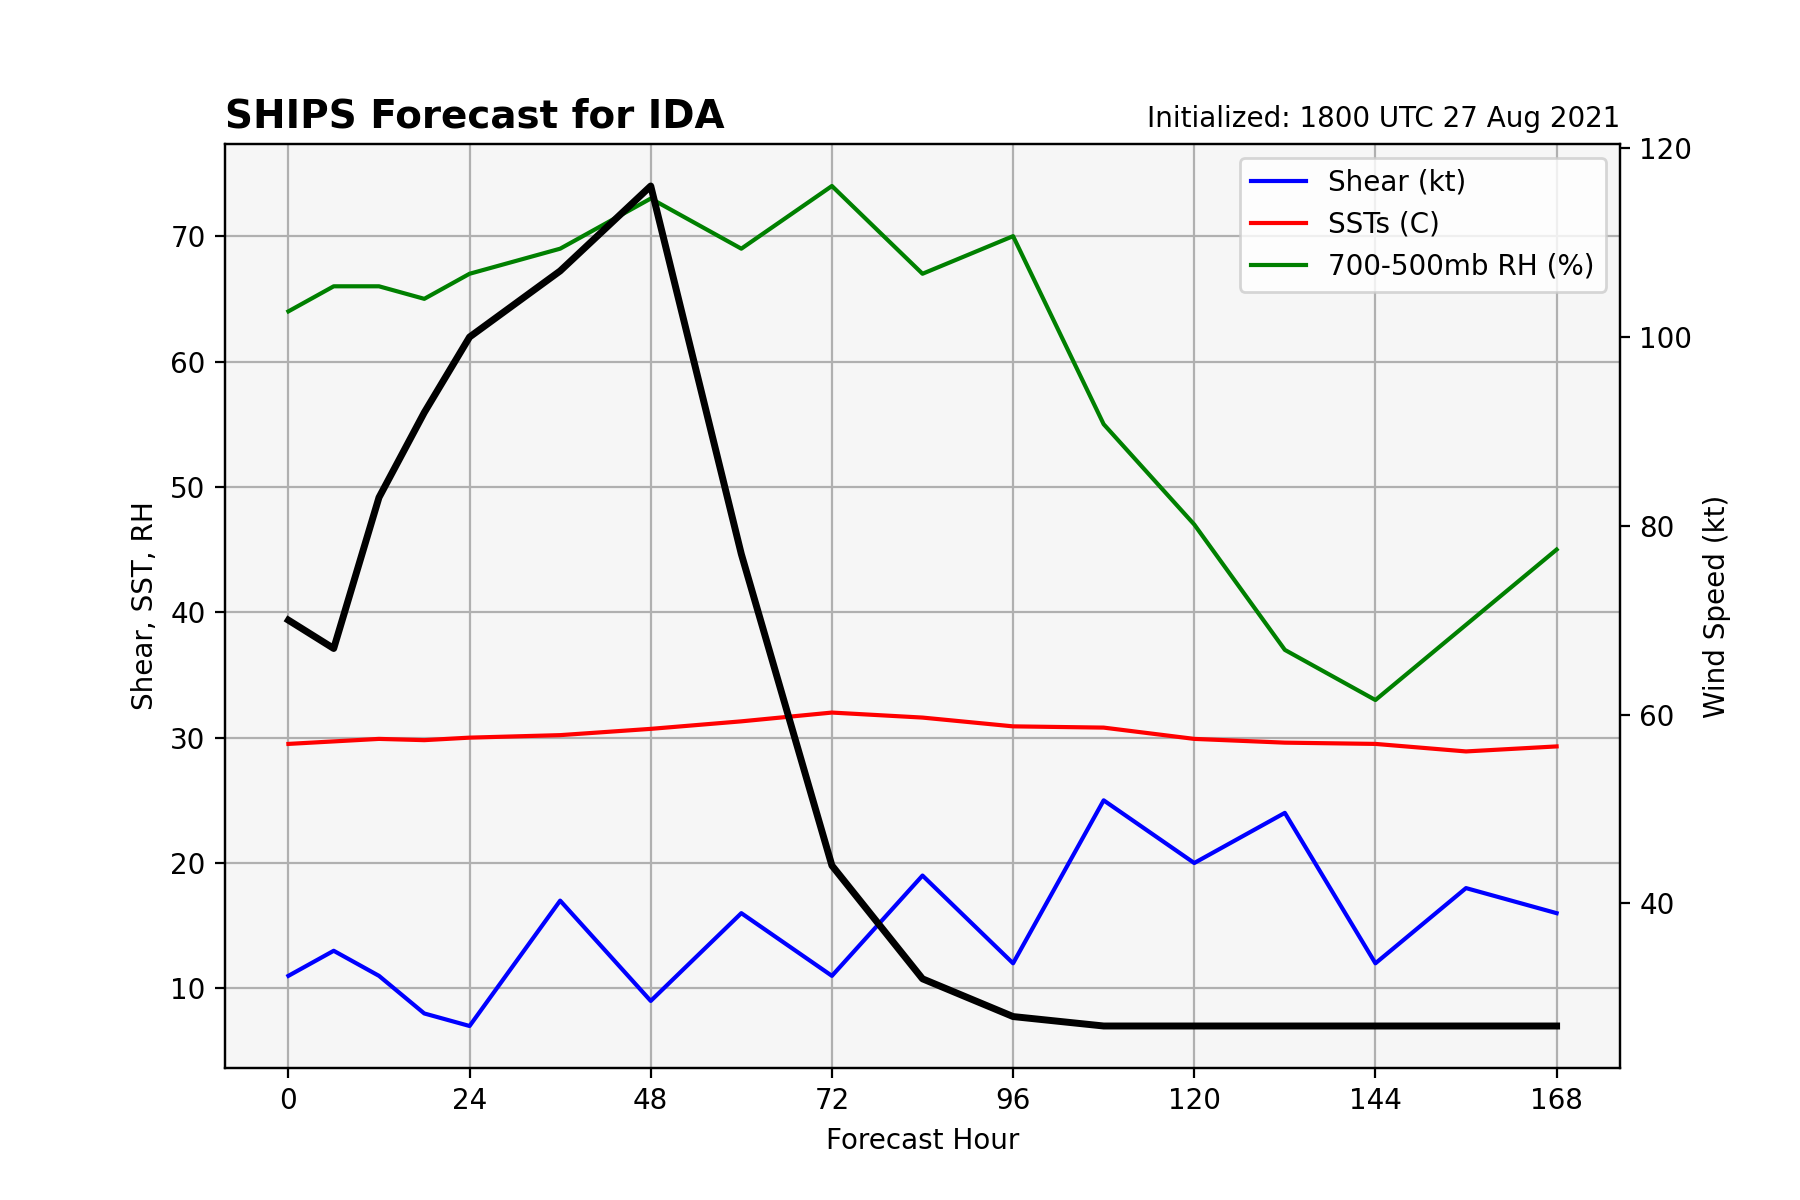 SHIPS Forecast for IDA, Initialized: 1800 UTC 27 Aug 2021